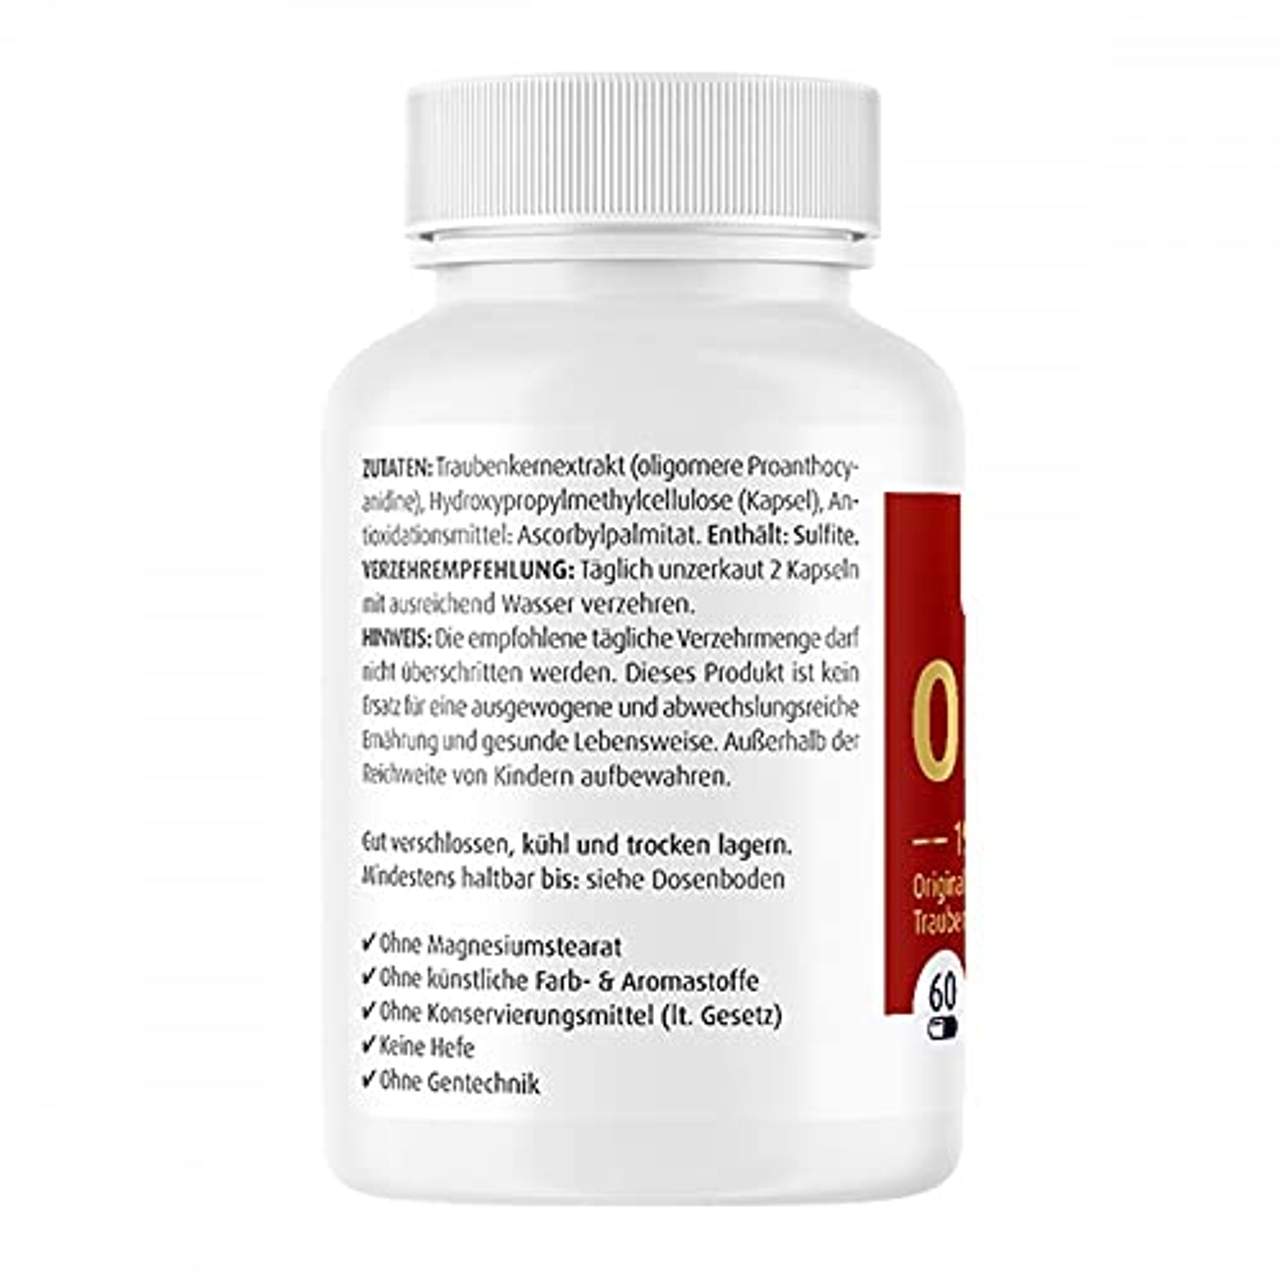 OPC Nativ Kapseln 192 mg